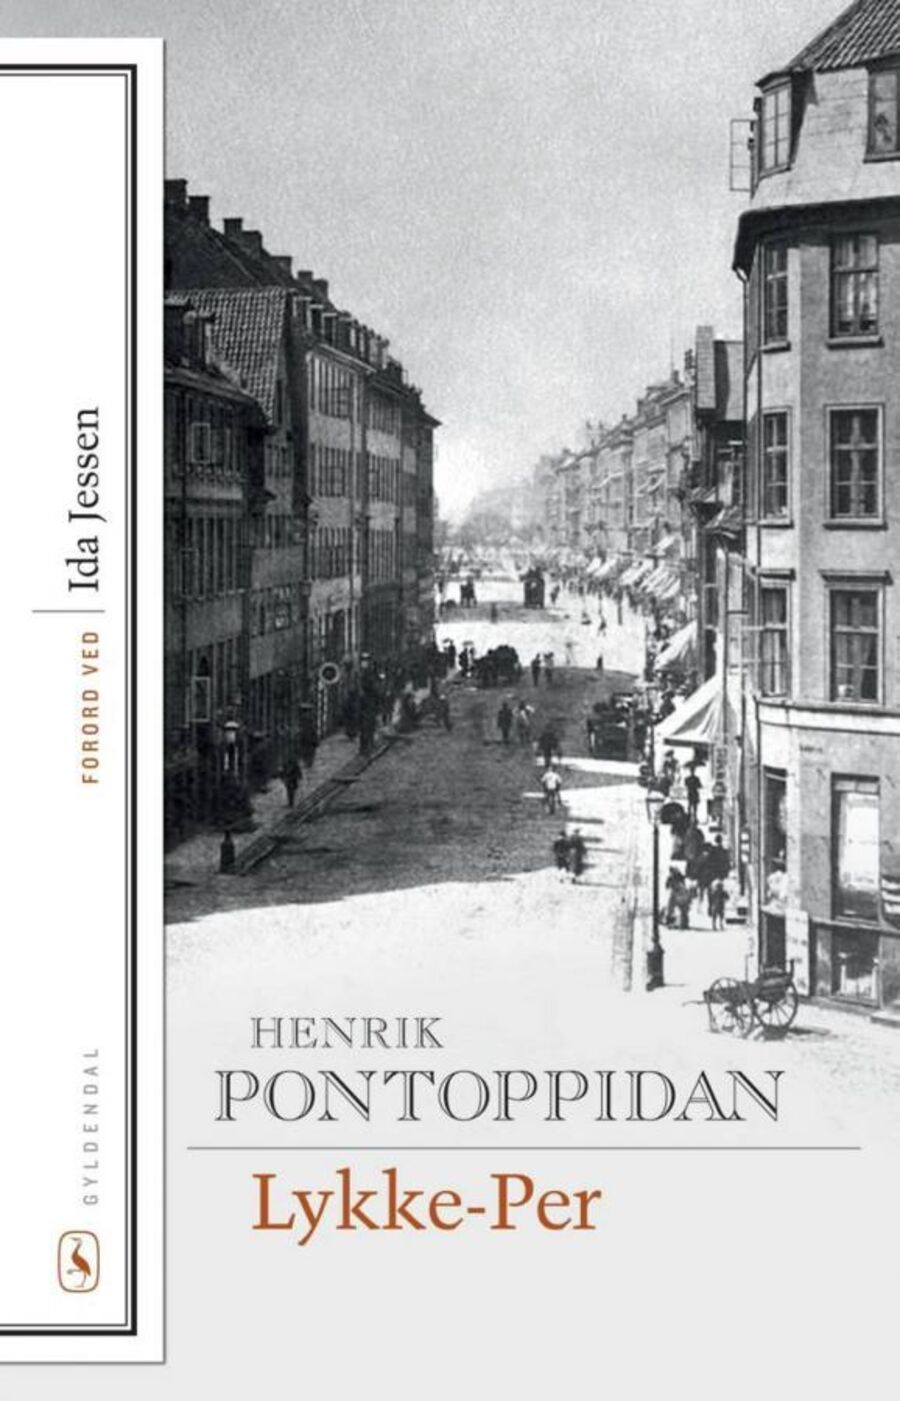 Forside af bogen Lykke-Per skrevet af Henrik Pontoppidan